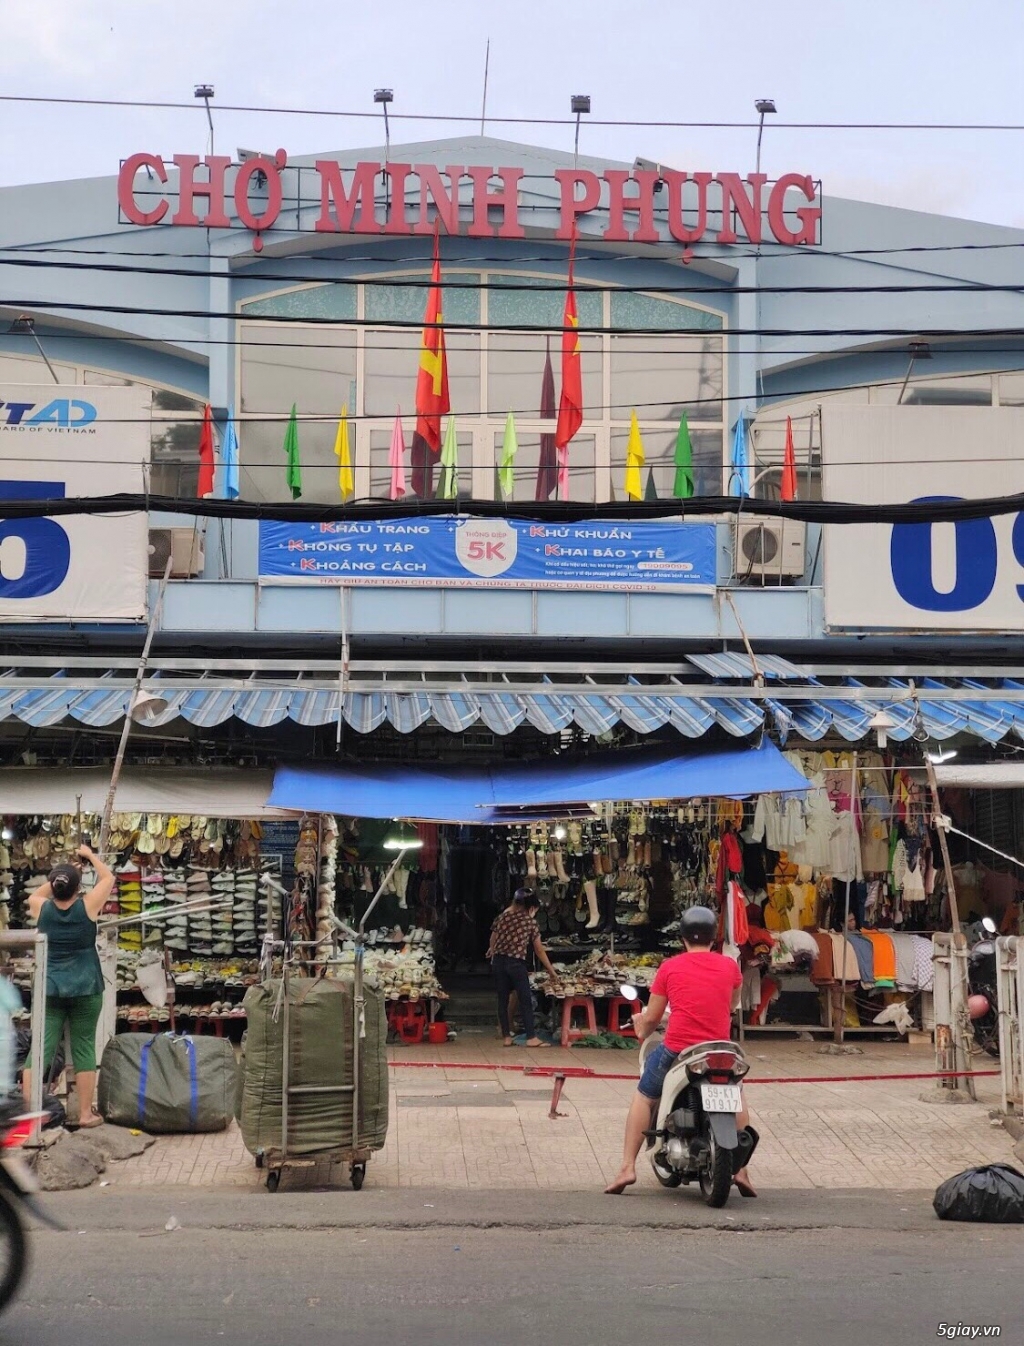 Cần sang Sạp chợ Minh Phụng bán đồ ăn uống